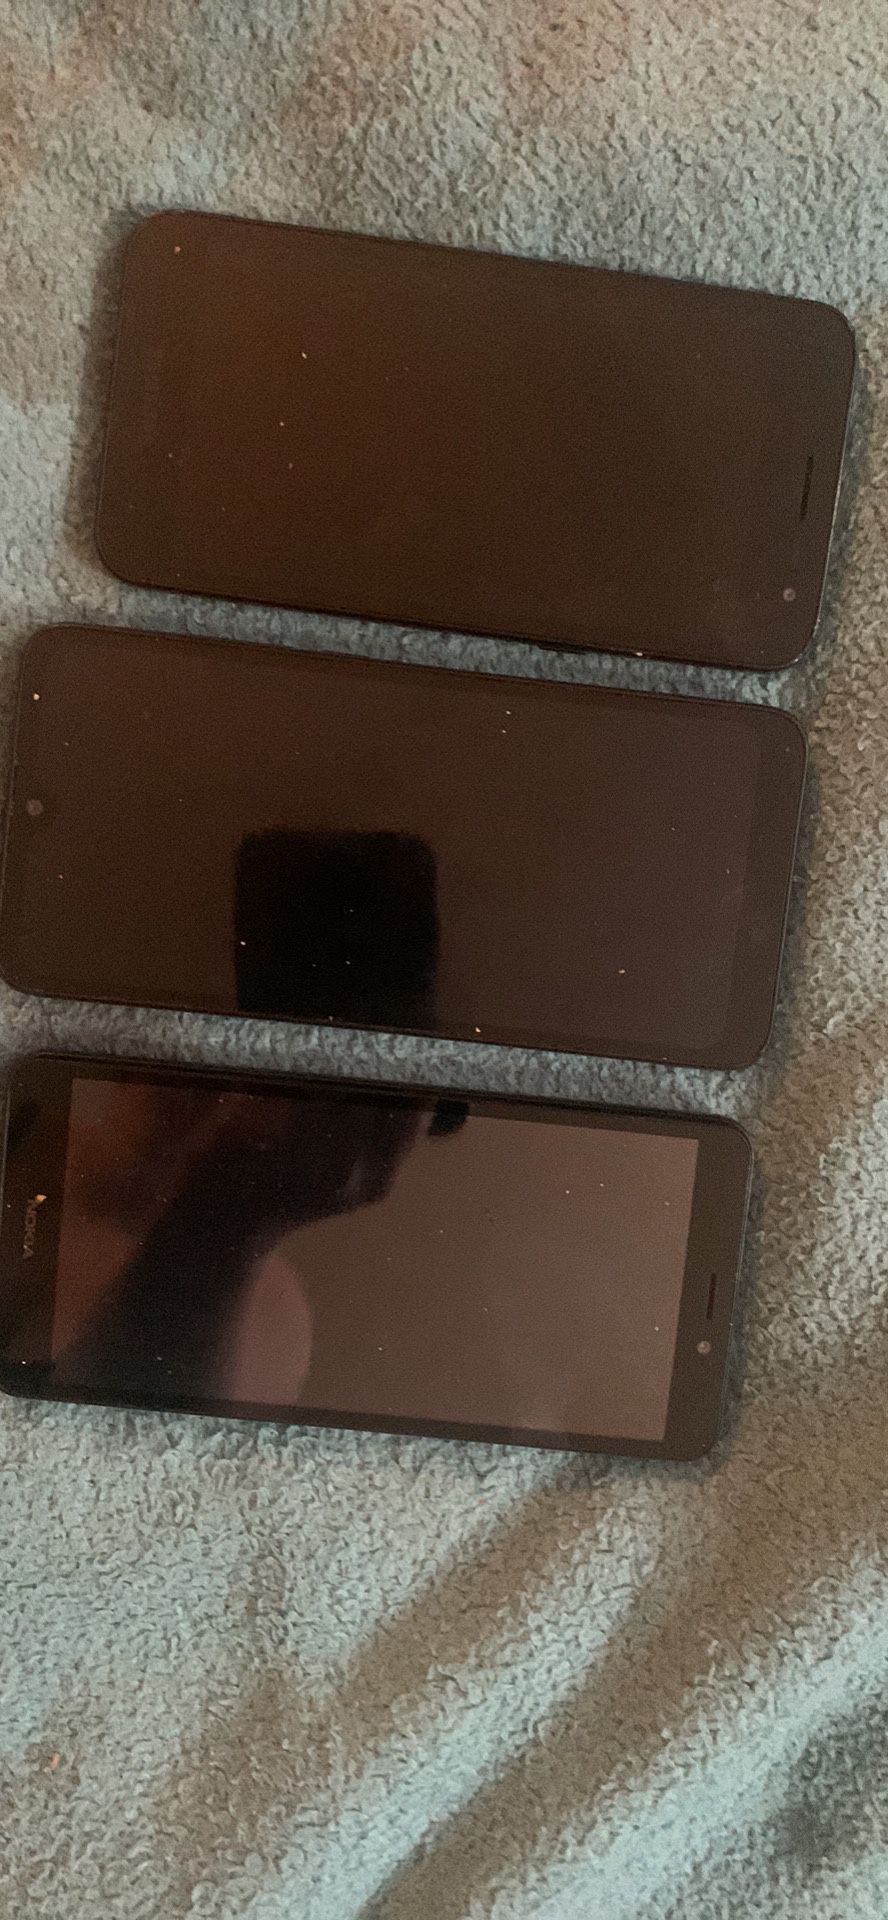 3 Phones 